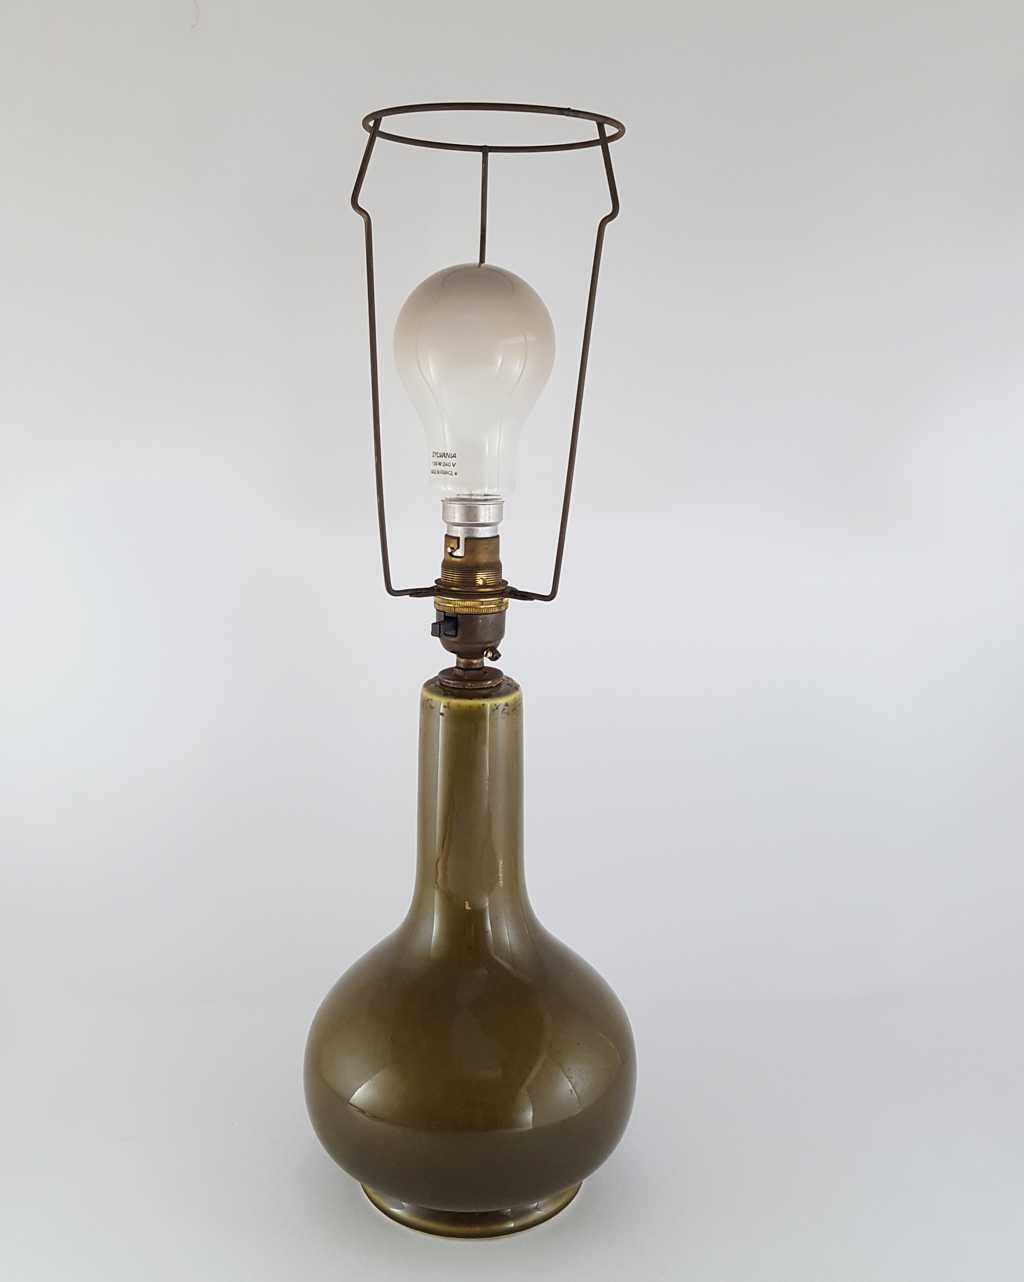 Lampa Art deco z lat 30-tych XX wieku - sygnowana